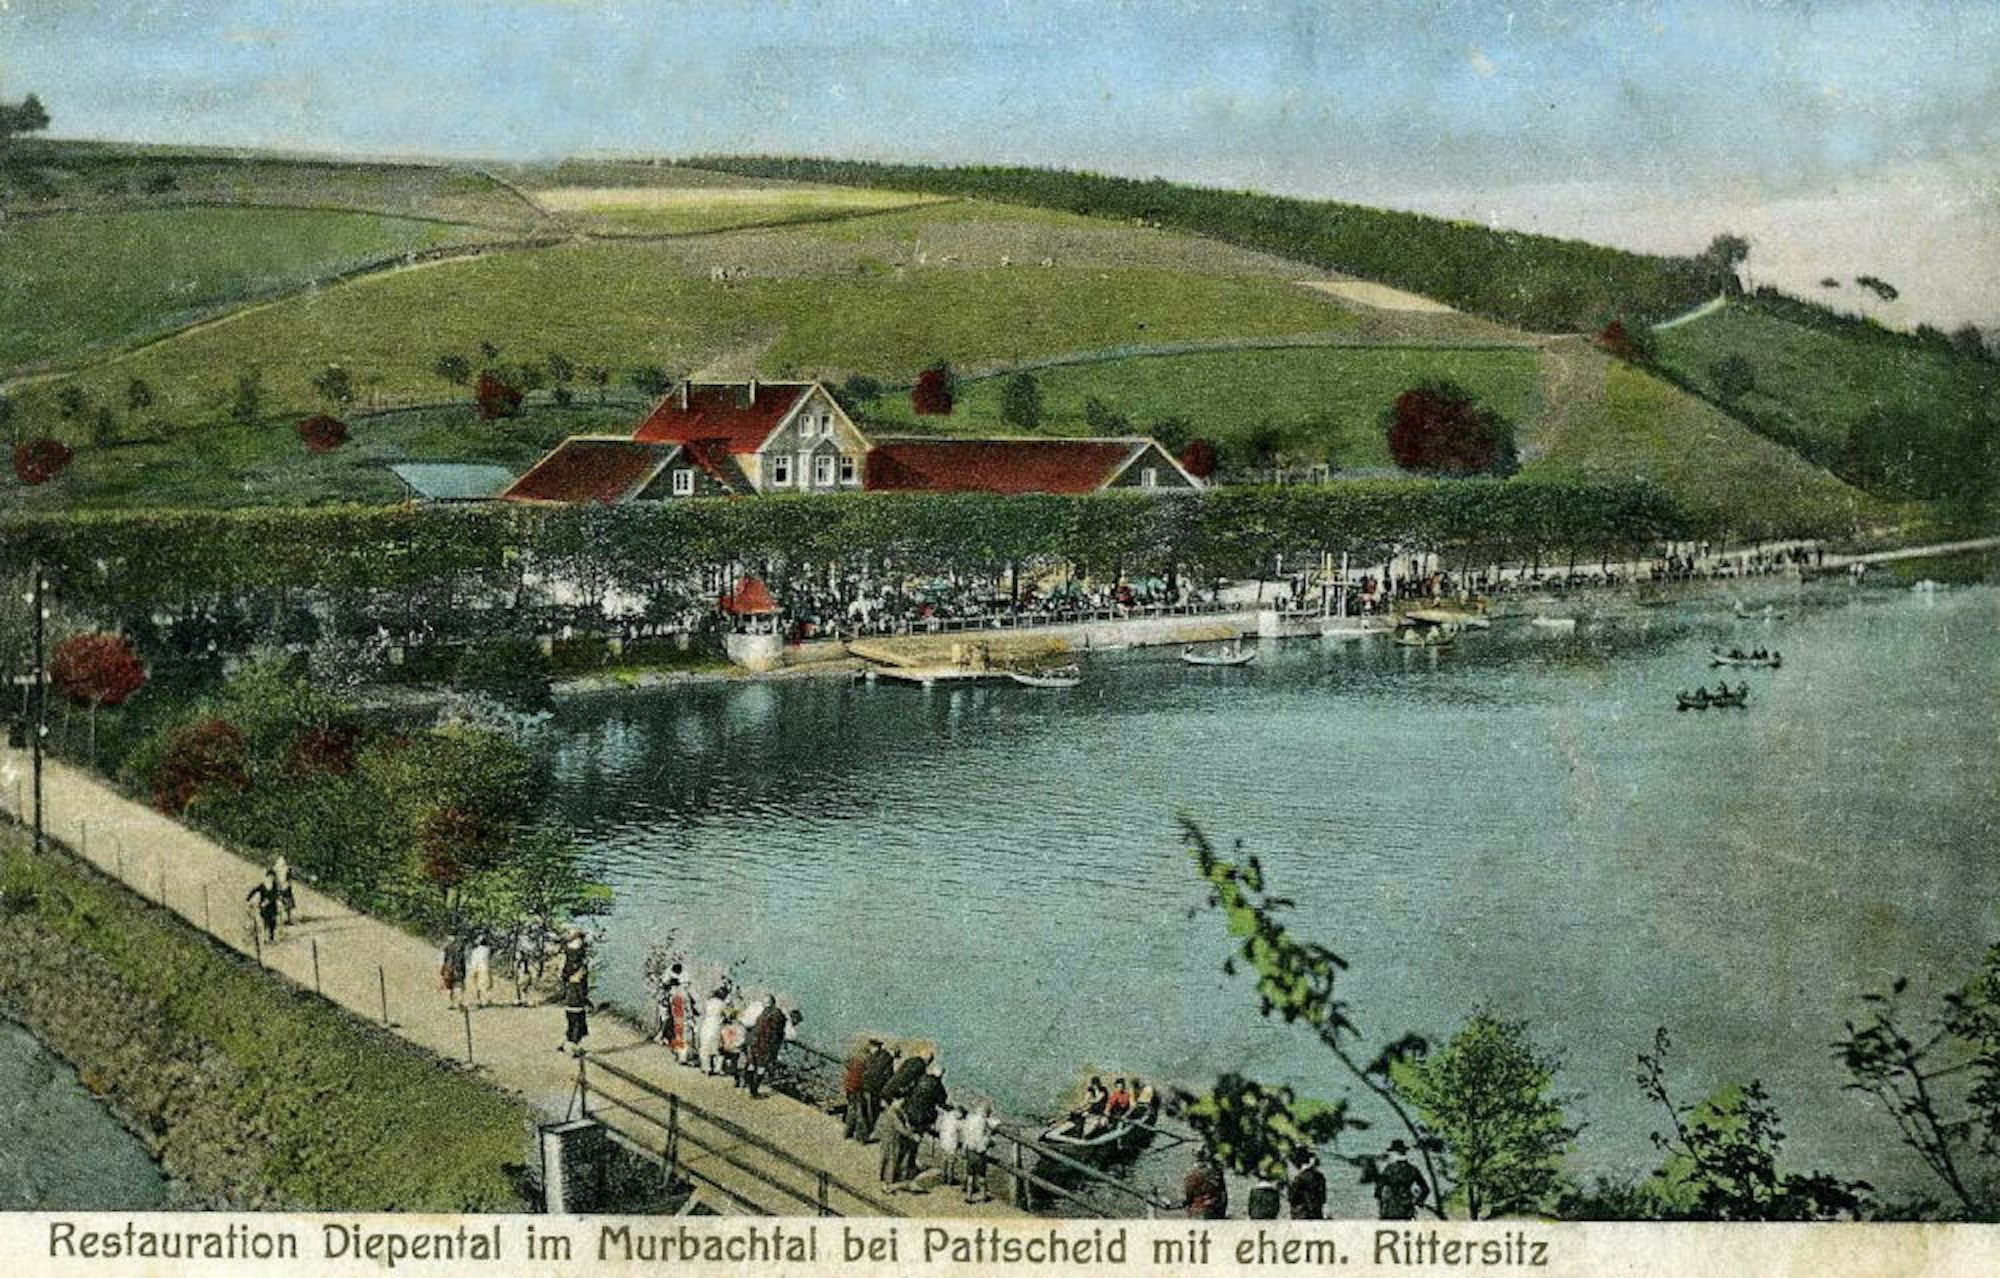 Historische Postkarte der Diepentalsperre von 1922 mit Ruderbooten und noch ohne Wochenendhäuser.